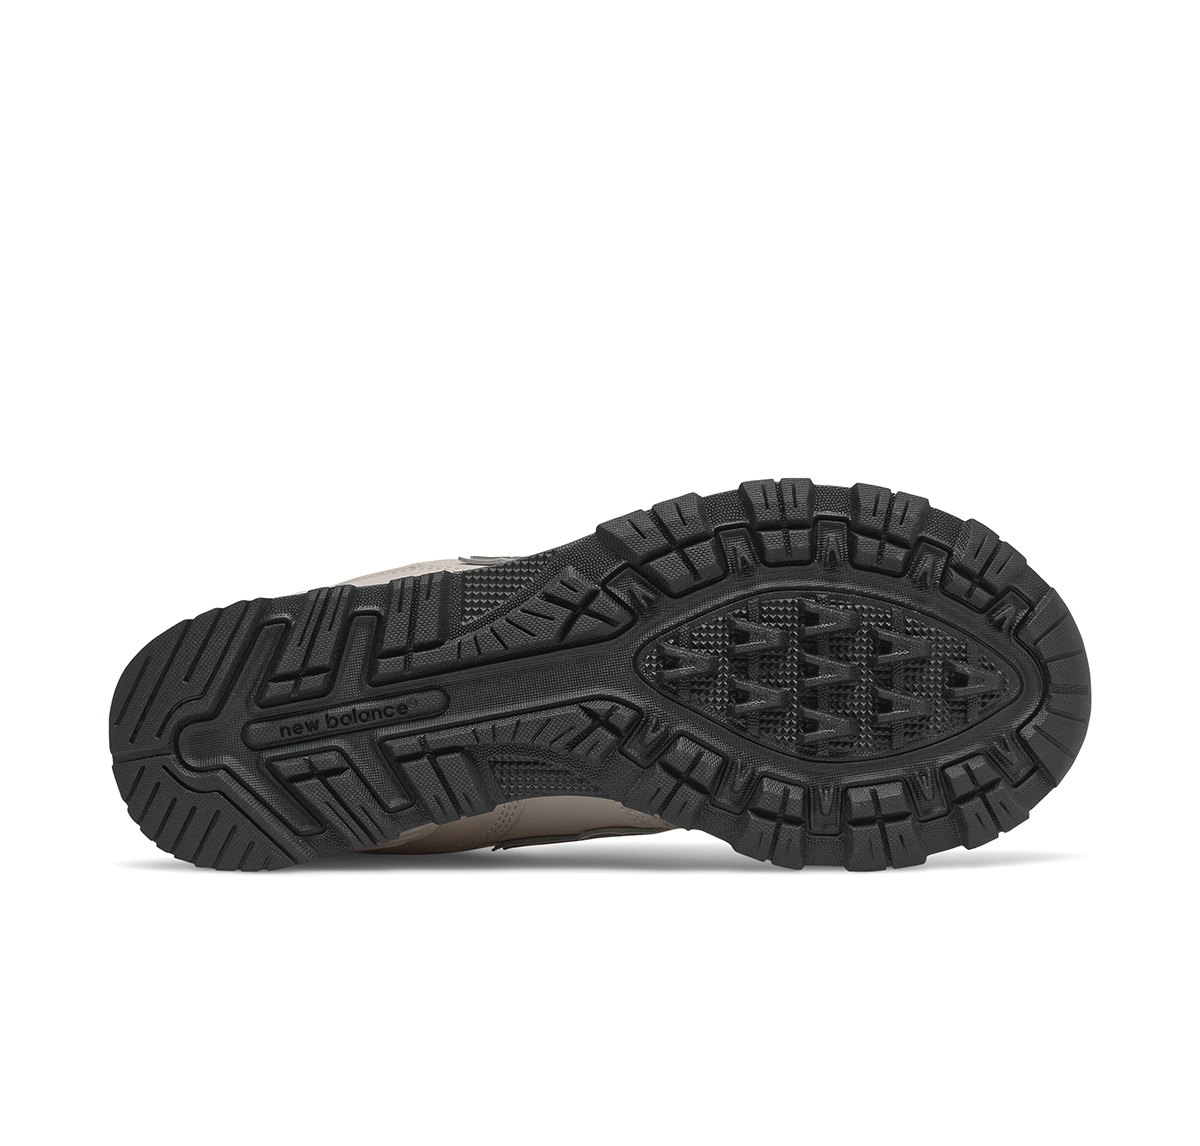 New Balance 574 Boot - Womens - Timberwolf sole